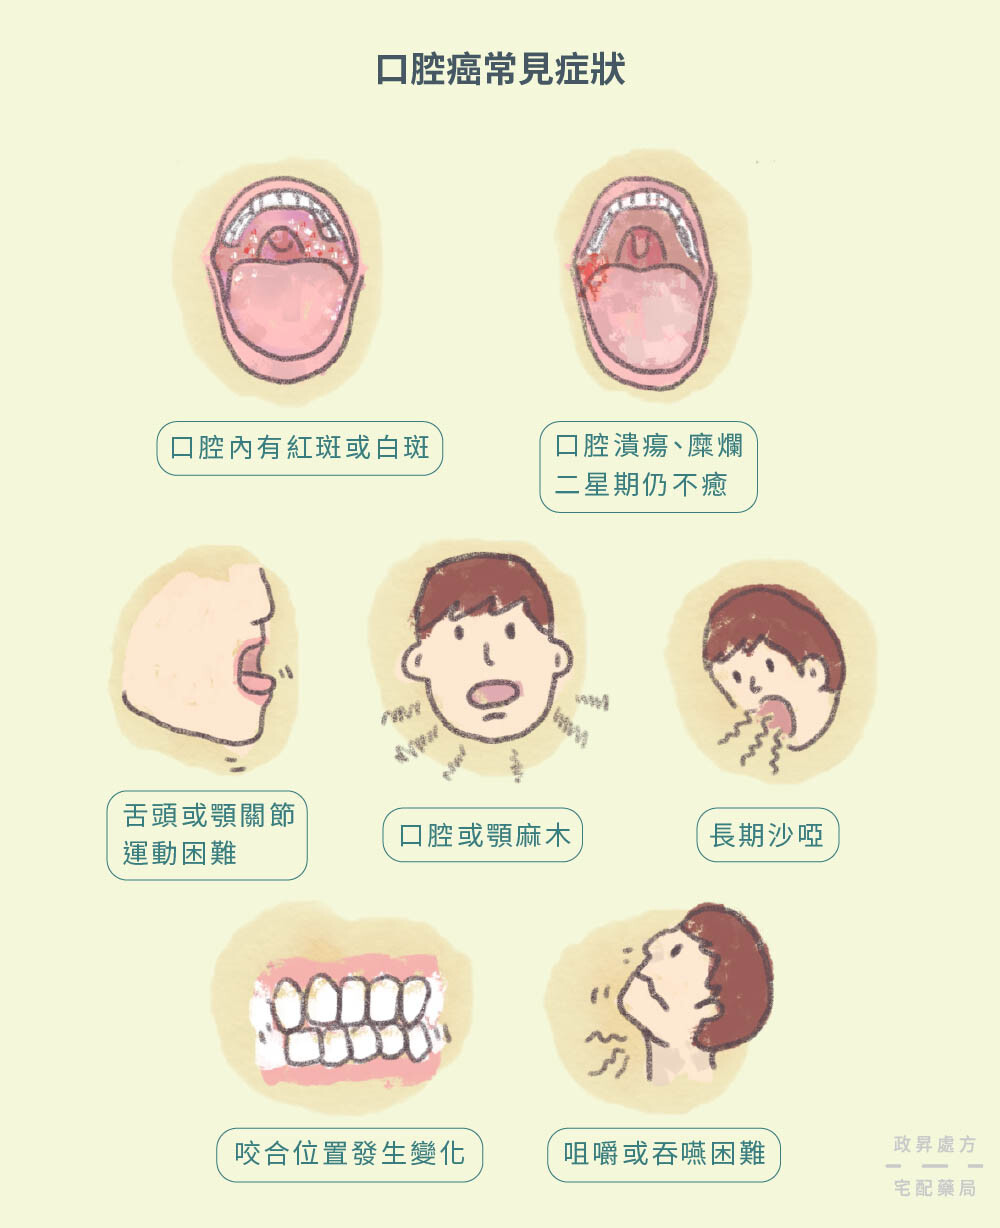 七種口腔癌常見症狀